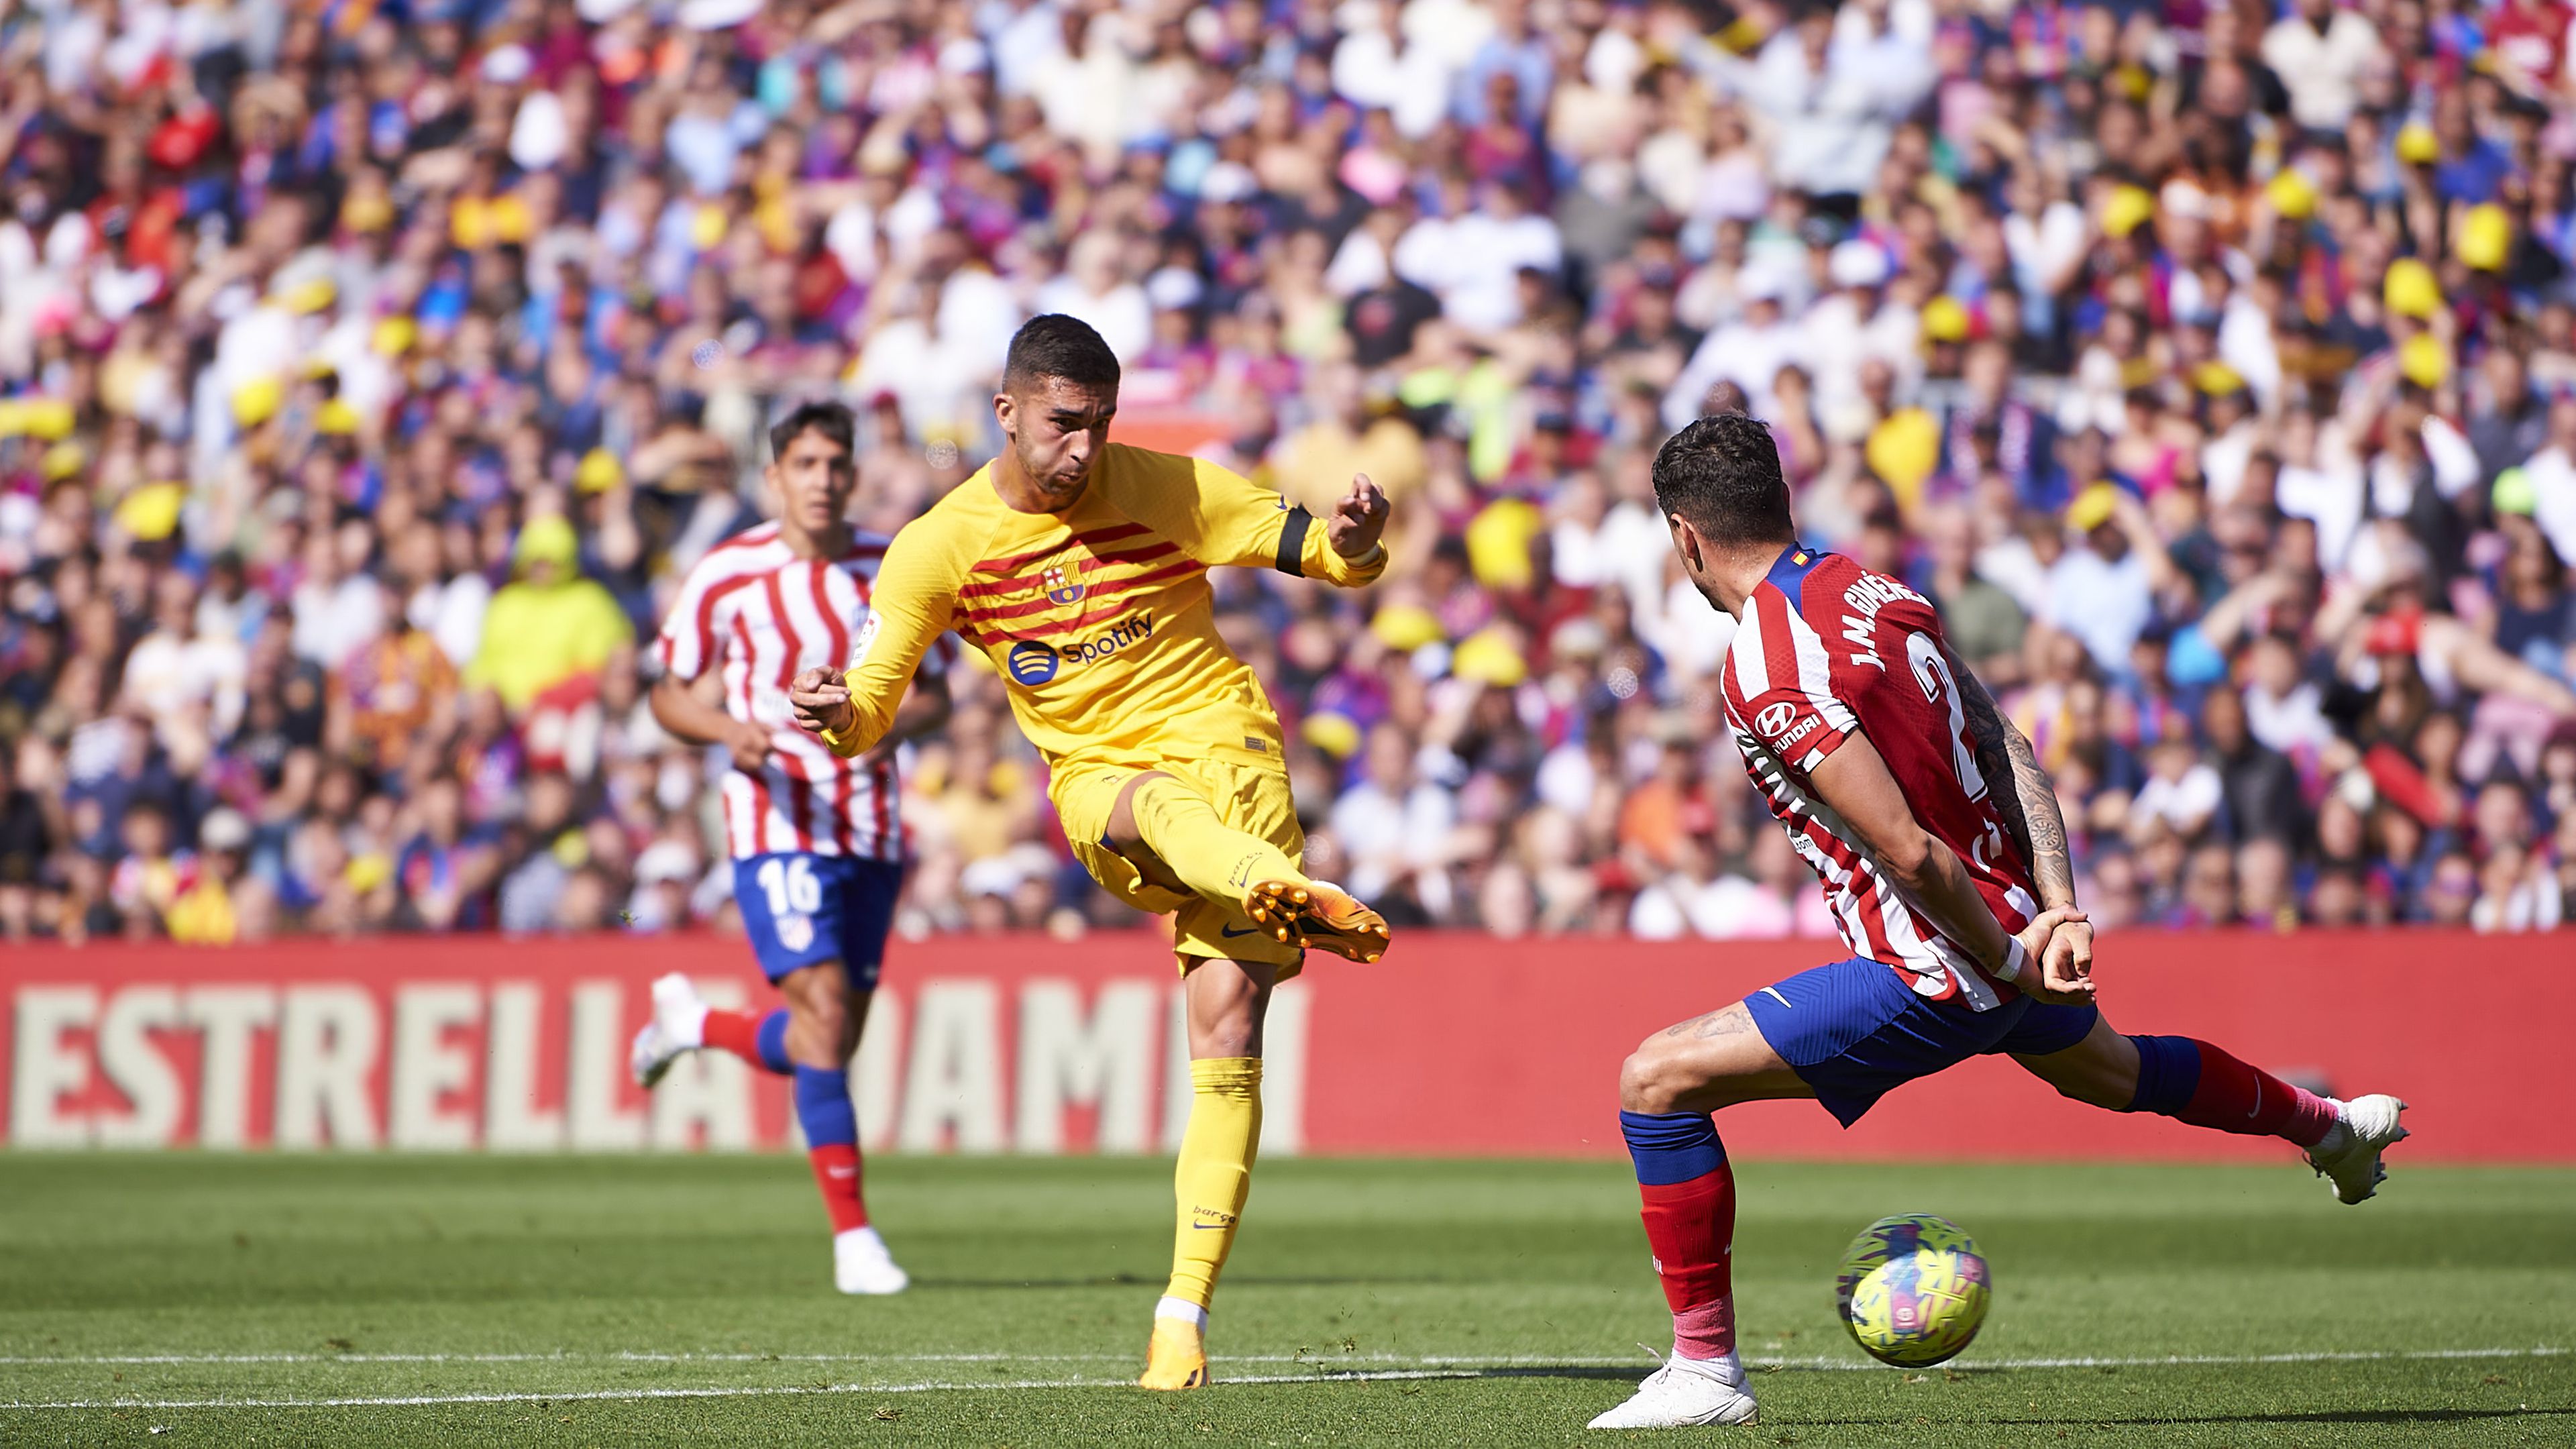 Nagy csatát vívott egymással az Atlético Madrid és a Barcelona, a rangadót végül Ferran Torres lövése döntötte el.